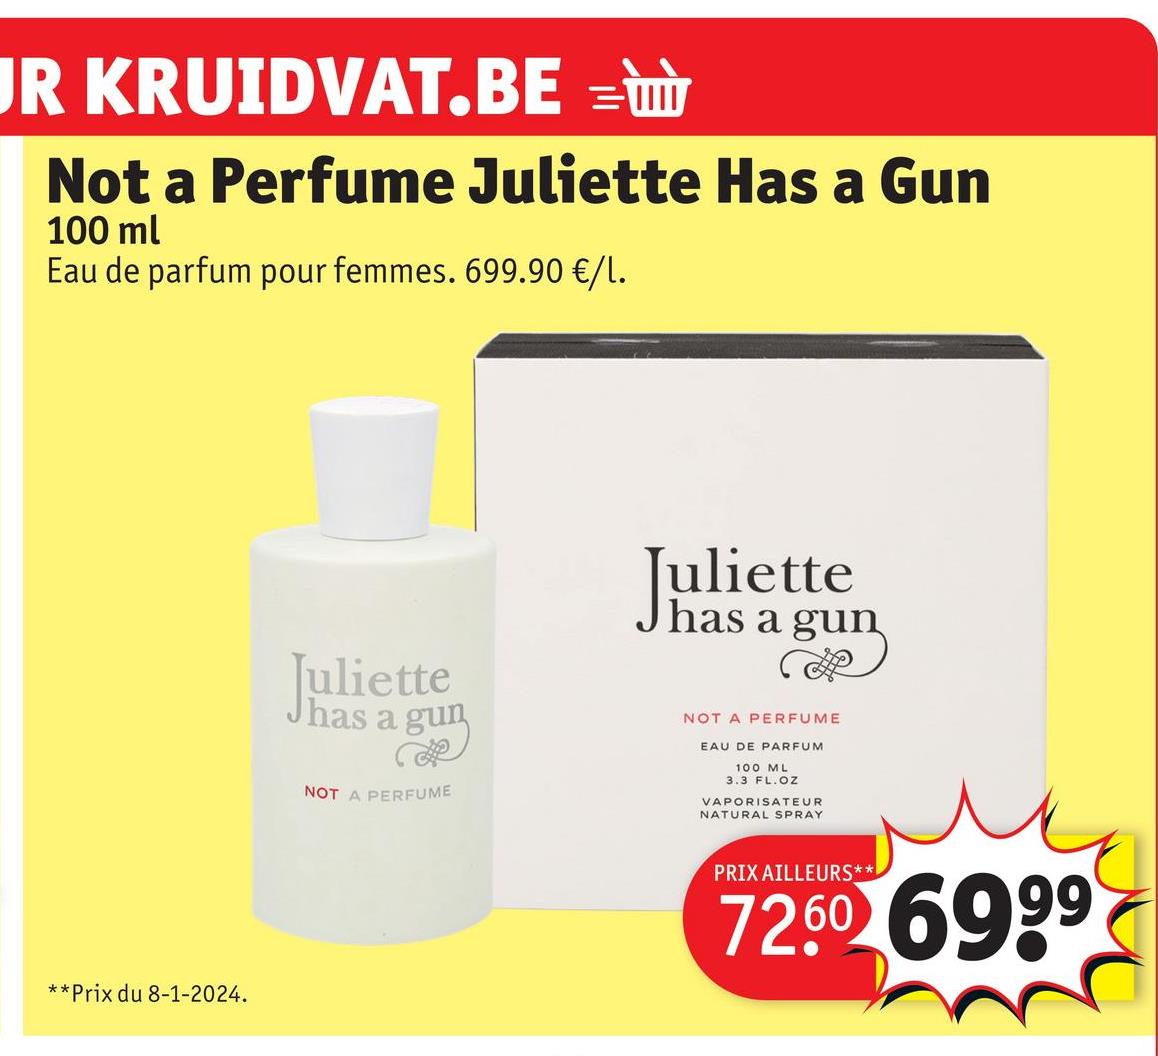 JR KRUIDVAT.BE =
Not a Perfume Juliette Has a Gun
100 ml
Eau de parfum pour femmes. 699.90 €/1.
**Prix du 8-1-2024.
Juliette
has
a gun
NOT A PERFUME
Juliette
has a gun
R
NOT A PERFUME
EAU DE PARFUM
100 ML
3.3 FL. OZ
VAPORISATEUR
NATURAL SPRAY
PRIX AILLEURS**
72.60 6999